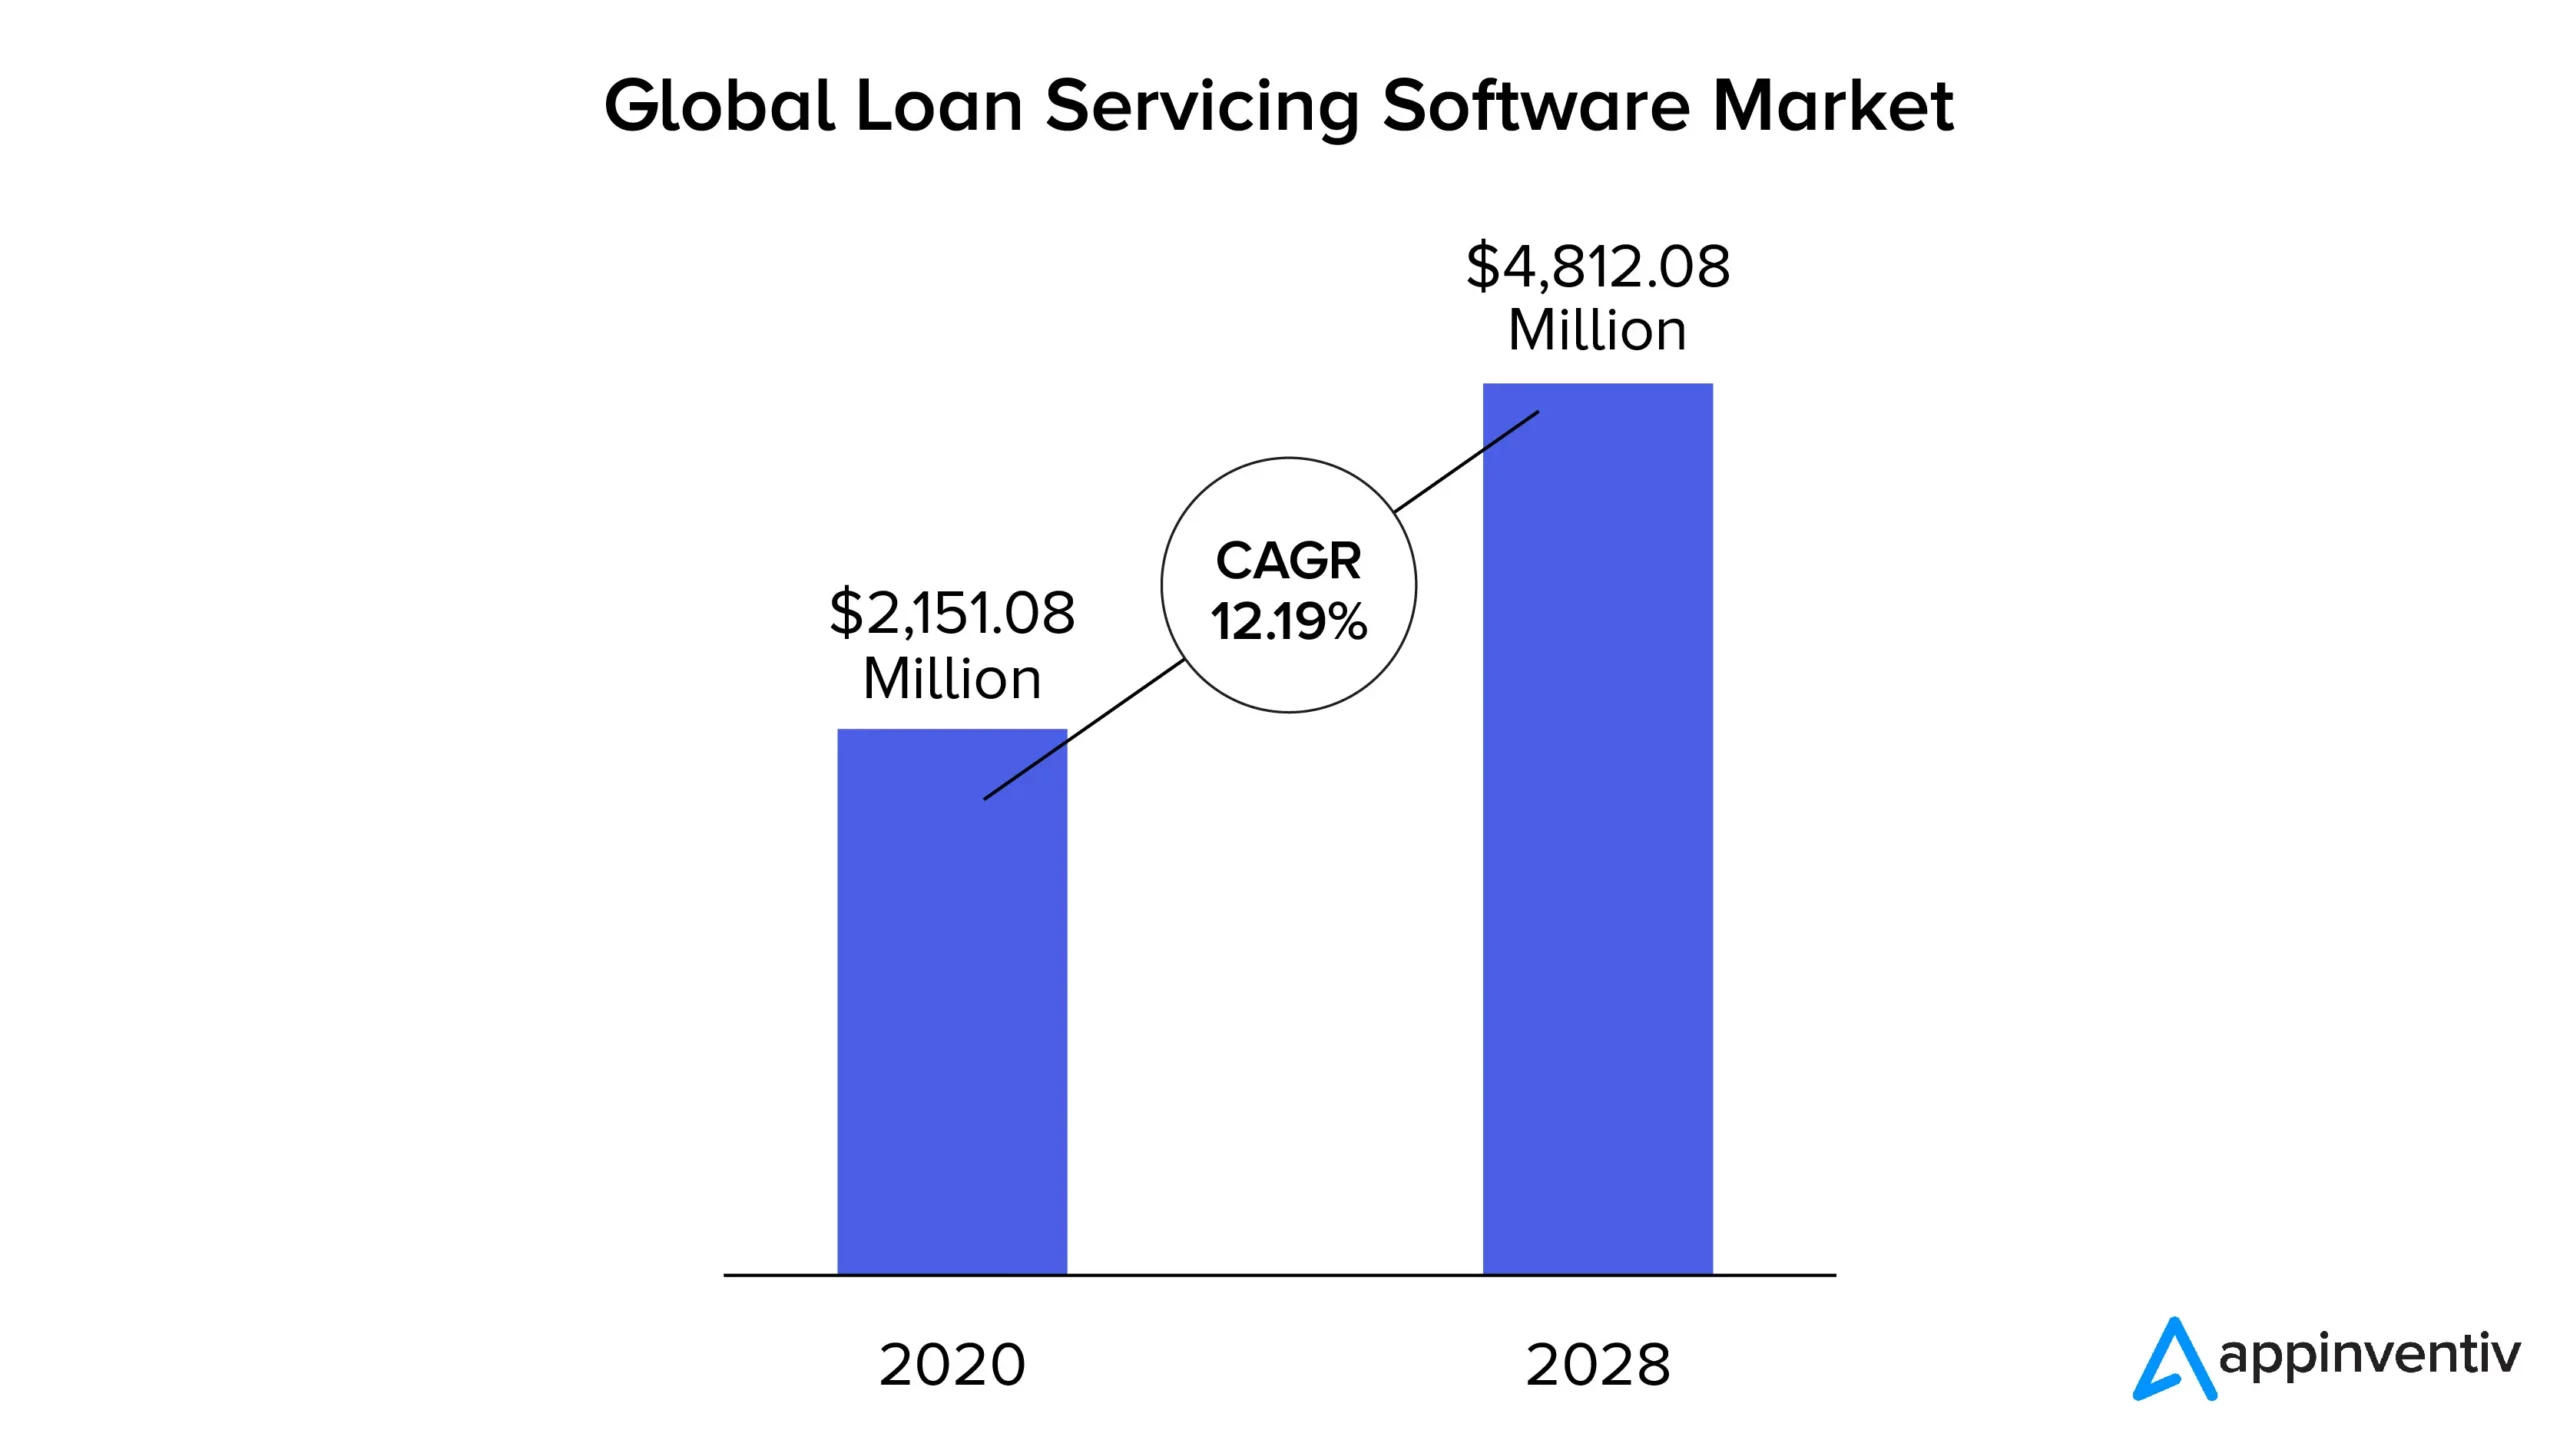 Mercato globale del software per la manutenzione dei prestiti